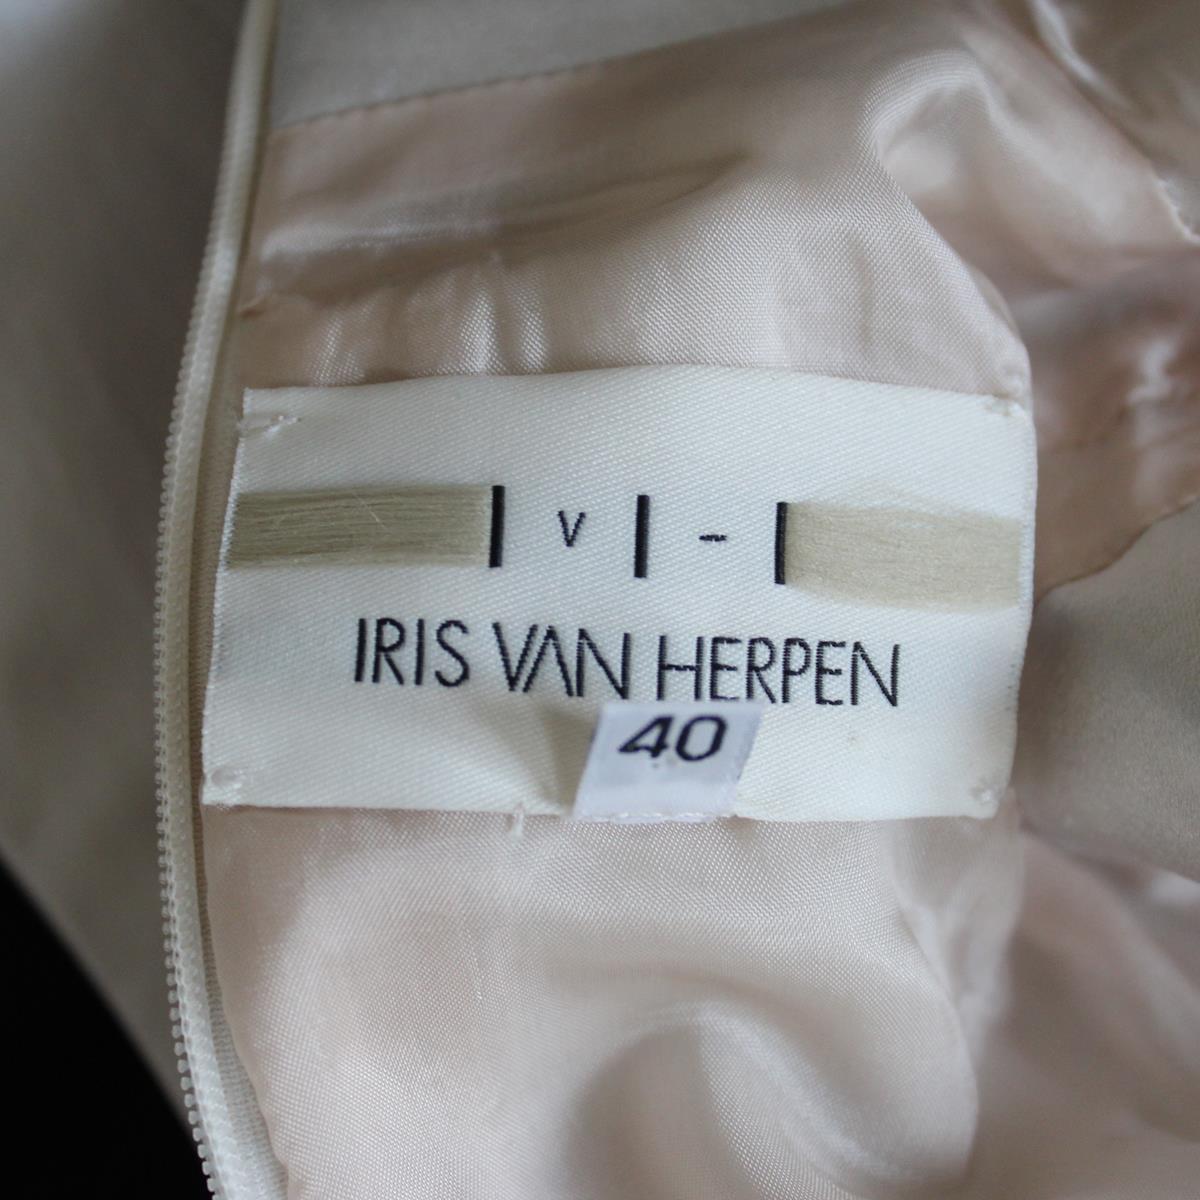 how much does an iris van herpen dress cost